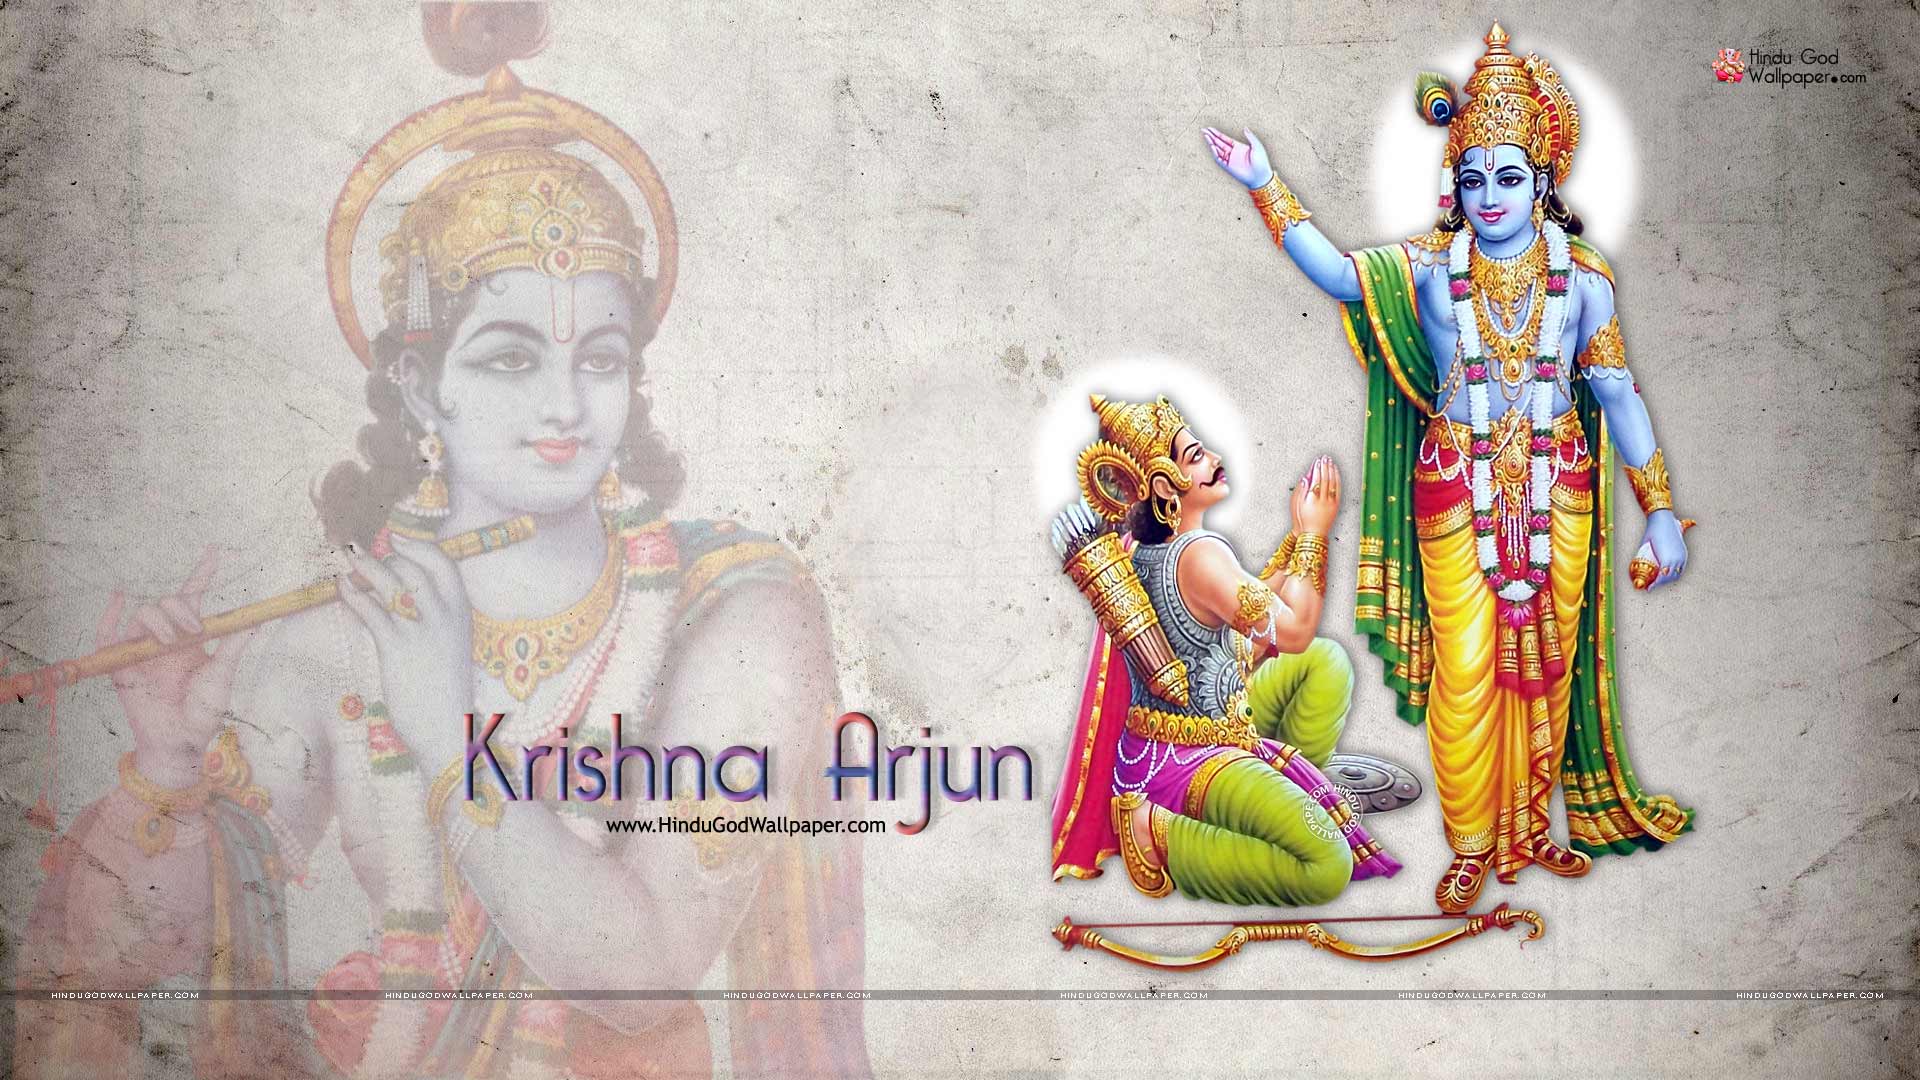 Krishna Arjuna Wallpaper Full Size Free Download